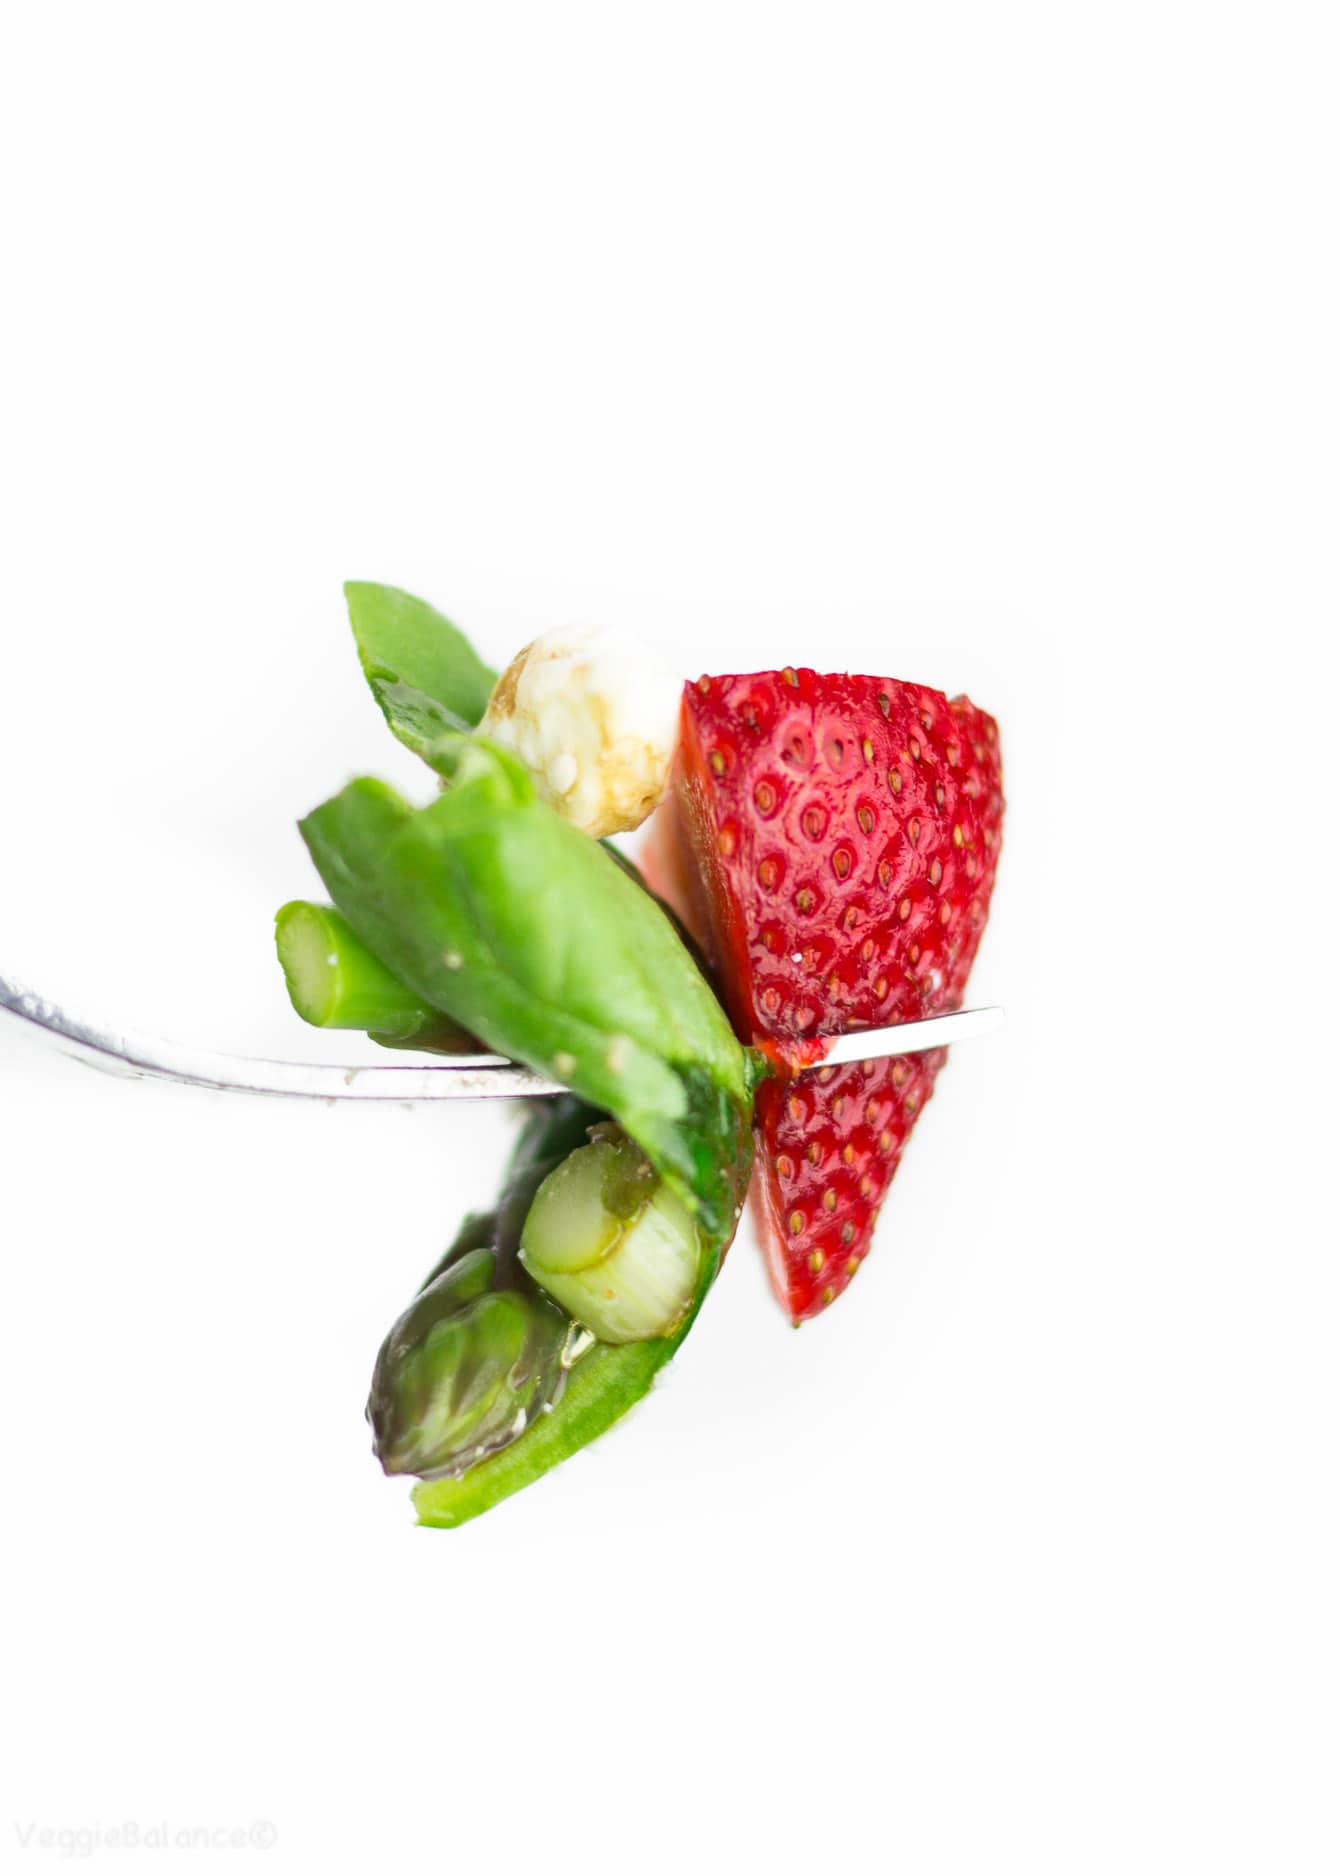 Strawberry Spinach Salad with Asparagus - Veggiebalance.com